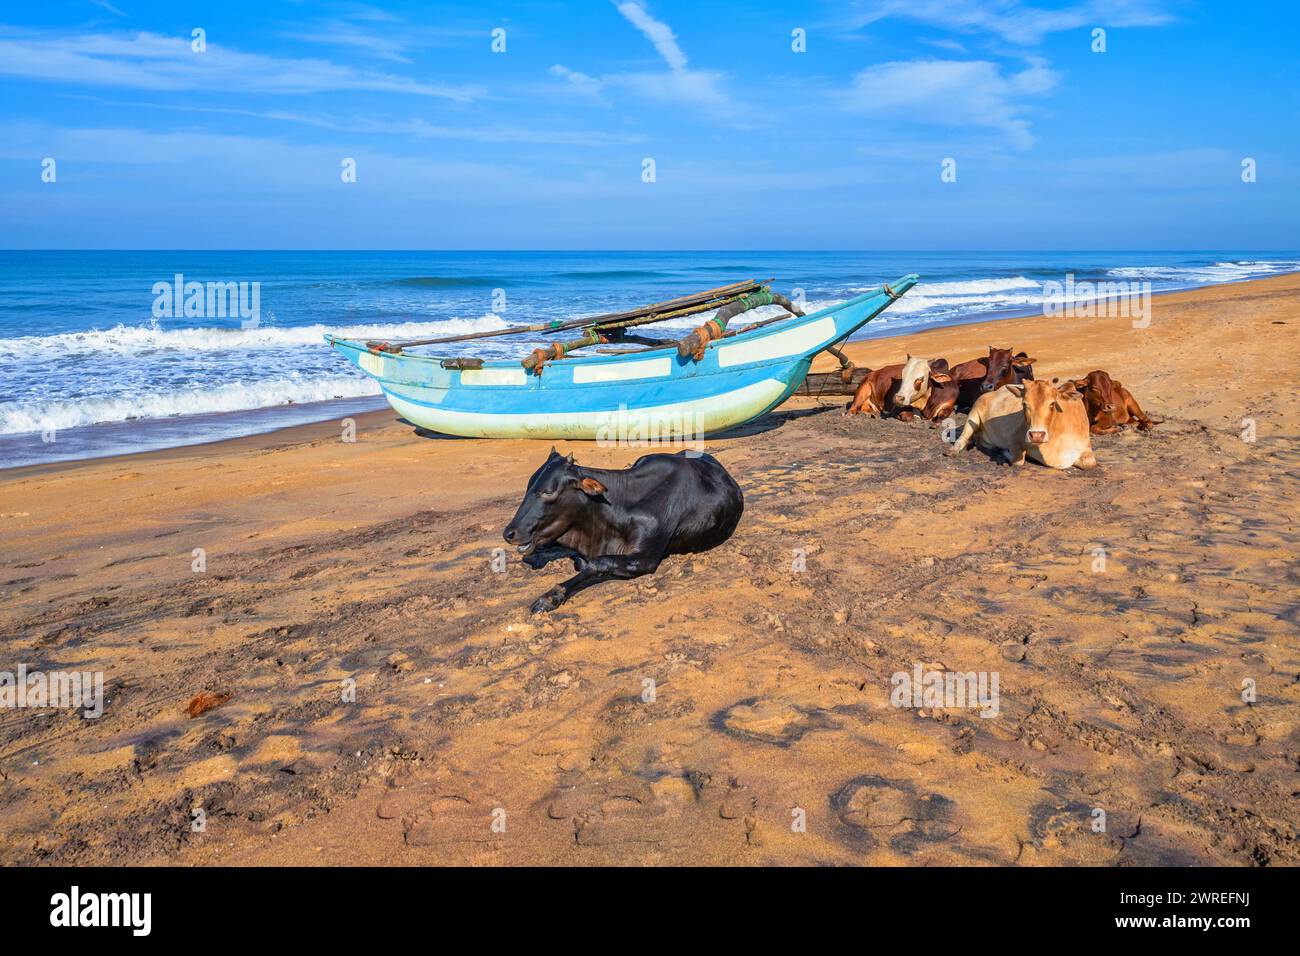 Barca da pesca e mucche tranquillamente sdraiate sulla spiaggia, oceano Indiano sullo sfondo, Sri Lanka, Waskaduwa. Foto Stock